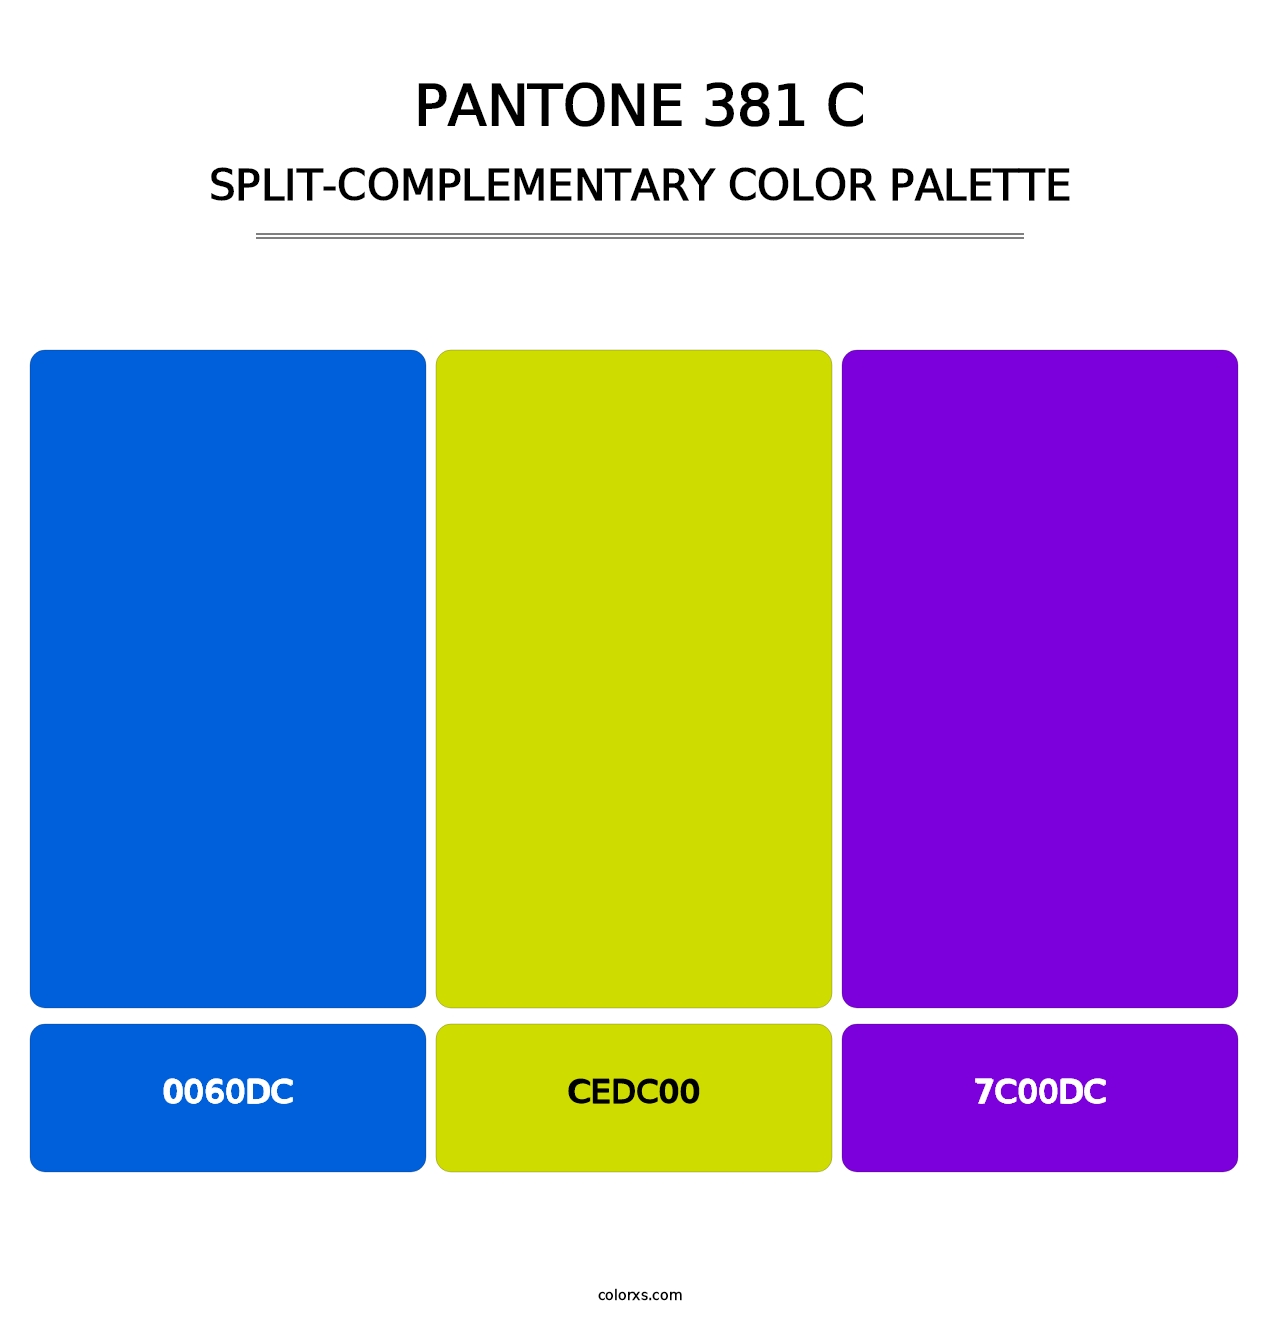 PANTONE 381 C - Split-Complementary Color Palette